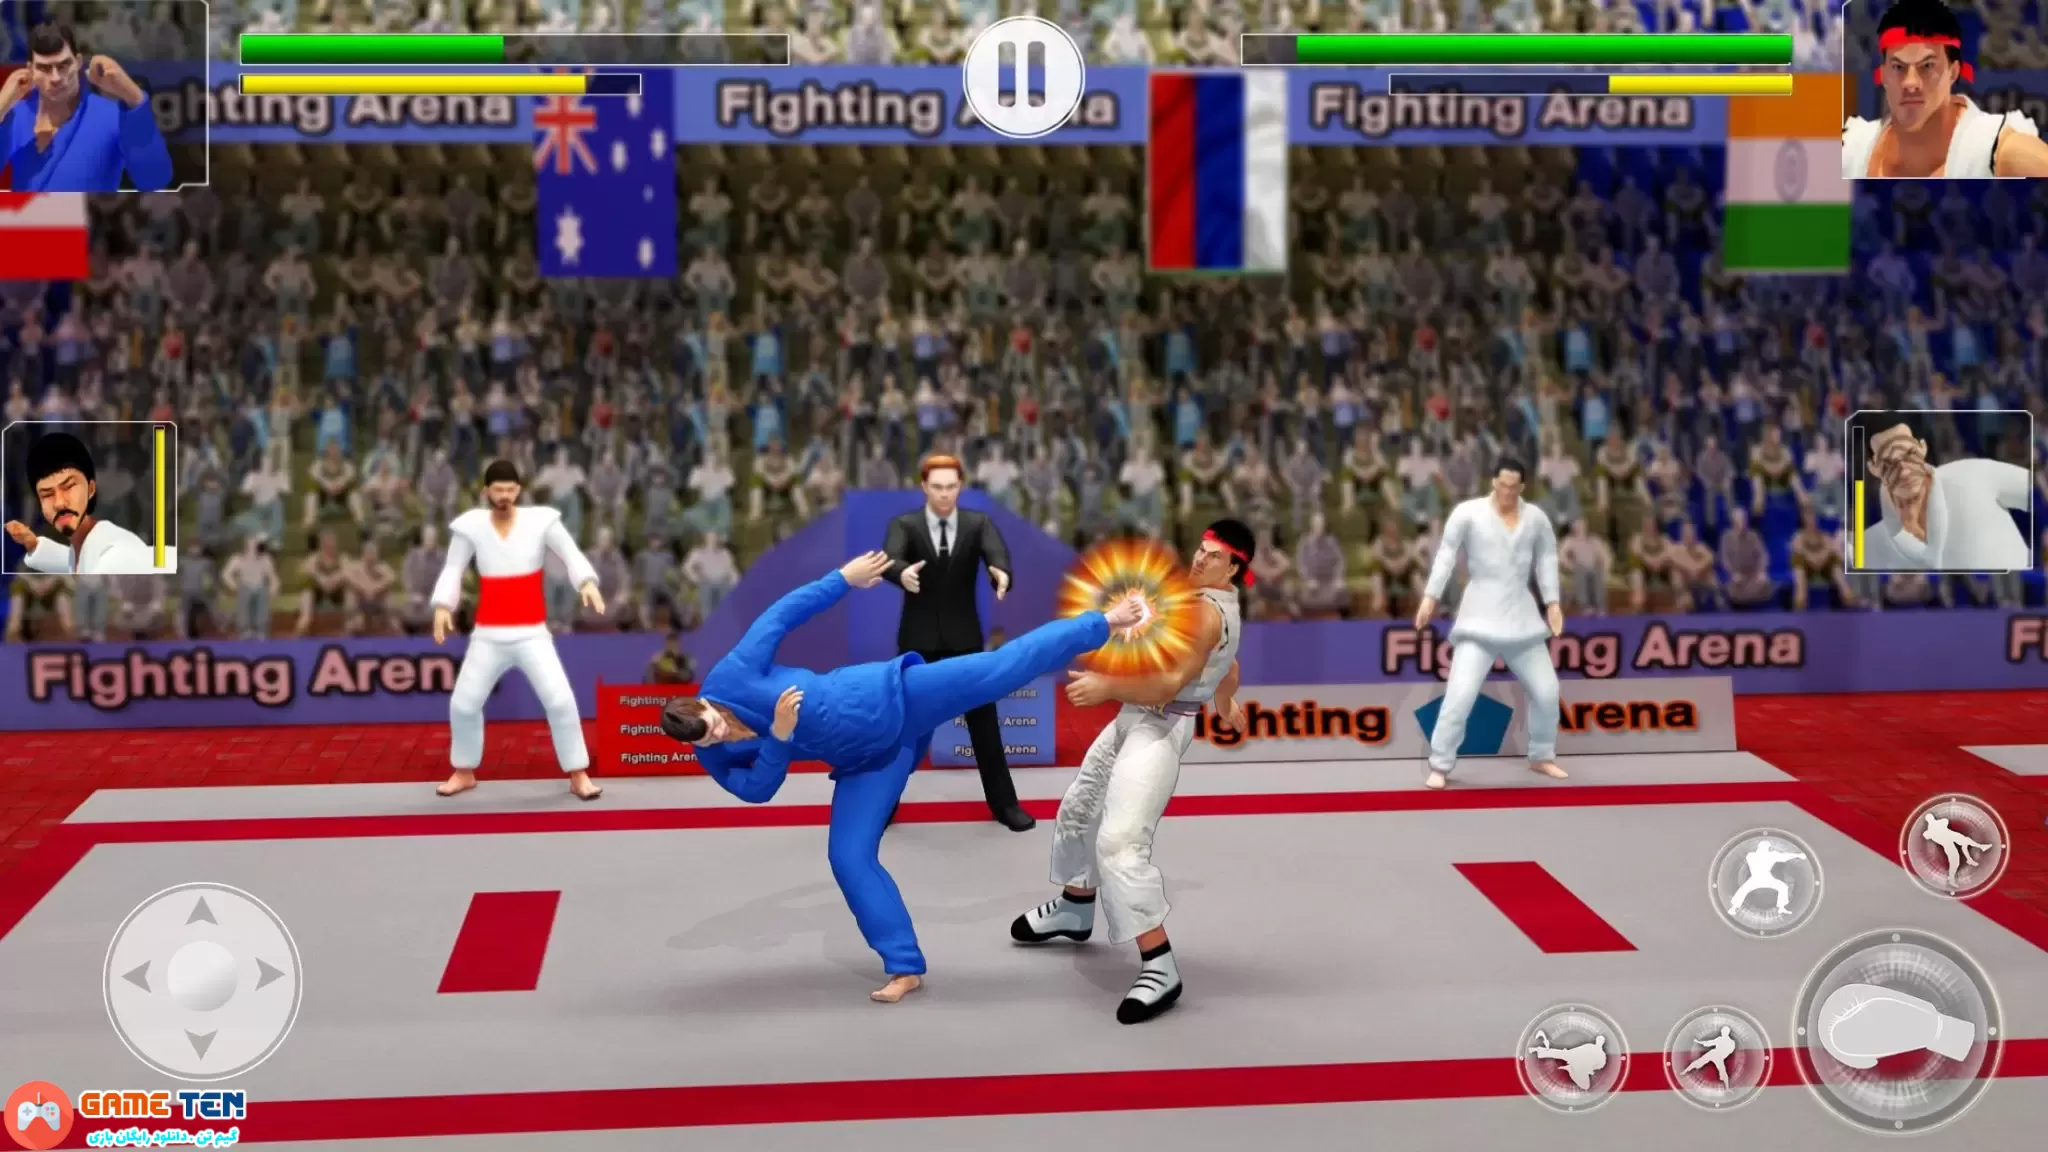 دانلود Karate Fighter: Fighting Games v3.3.0 - بازی مبارز کاراته کار اندروید + مود